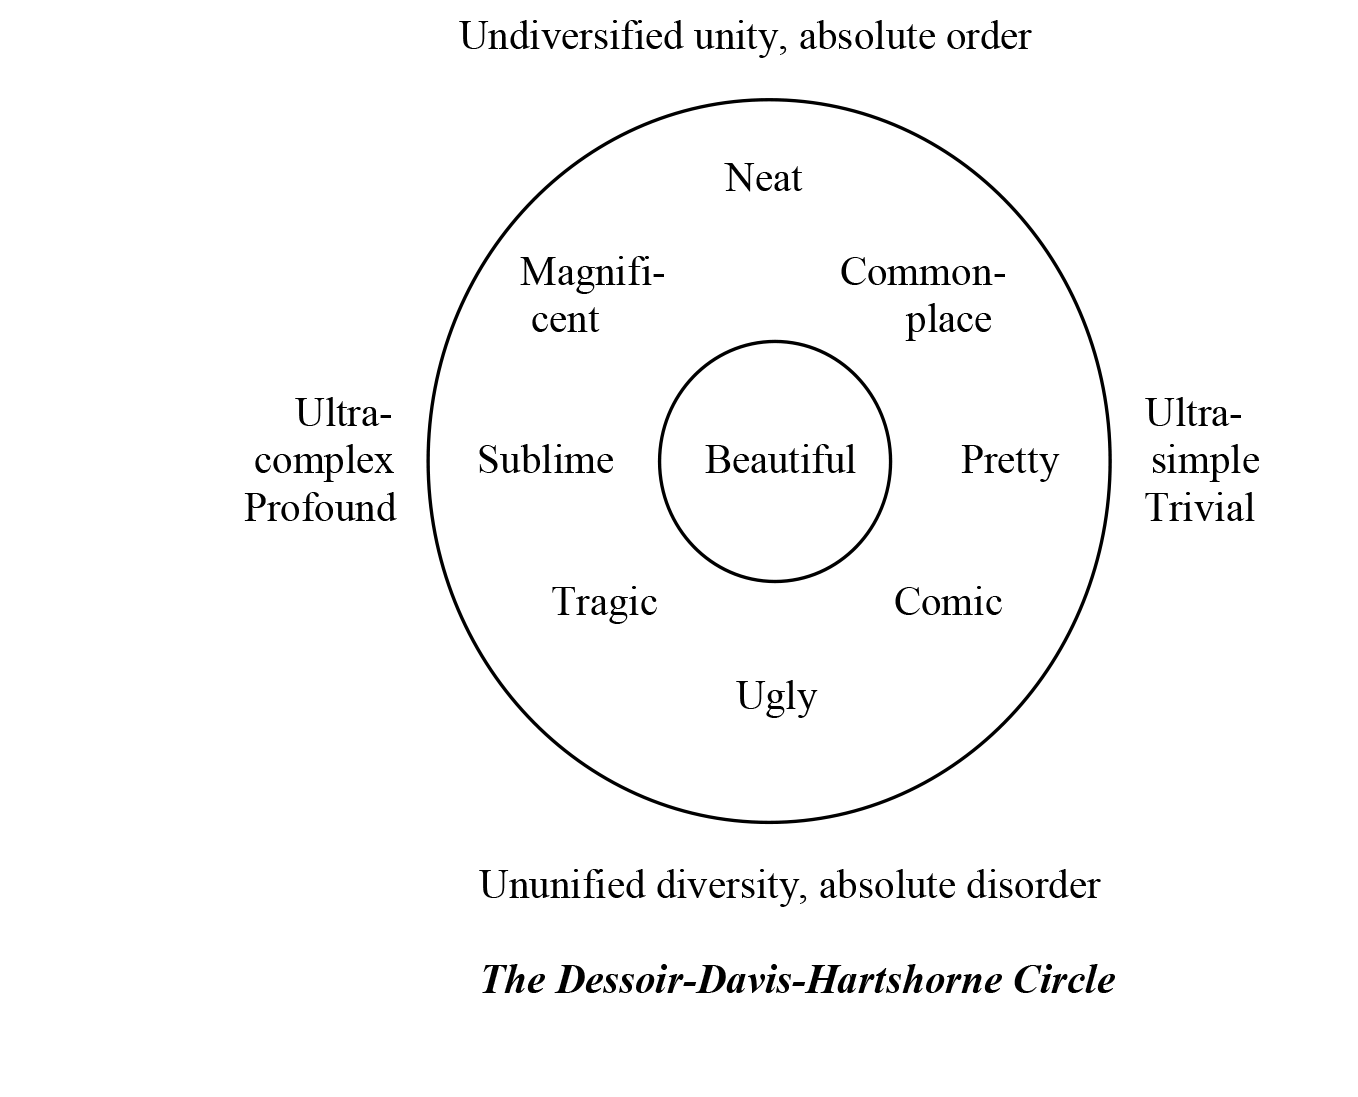 graph of undiversified unity